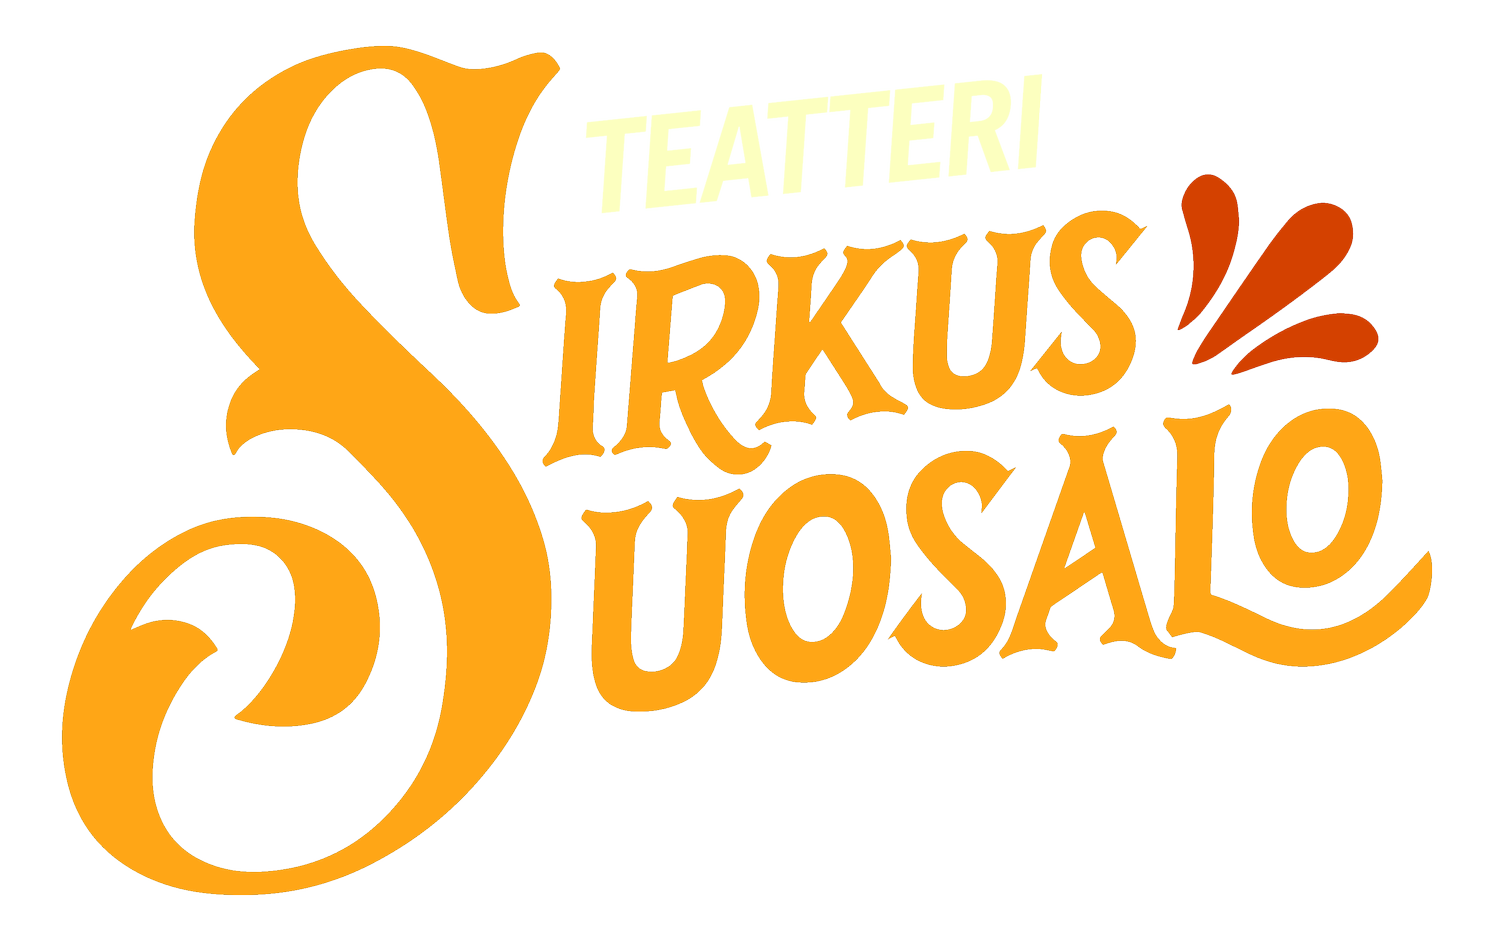 Teatteri Sirkus Suosalo